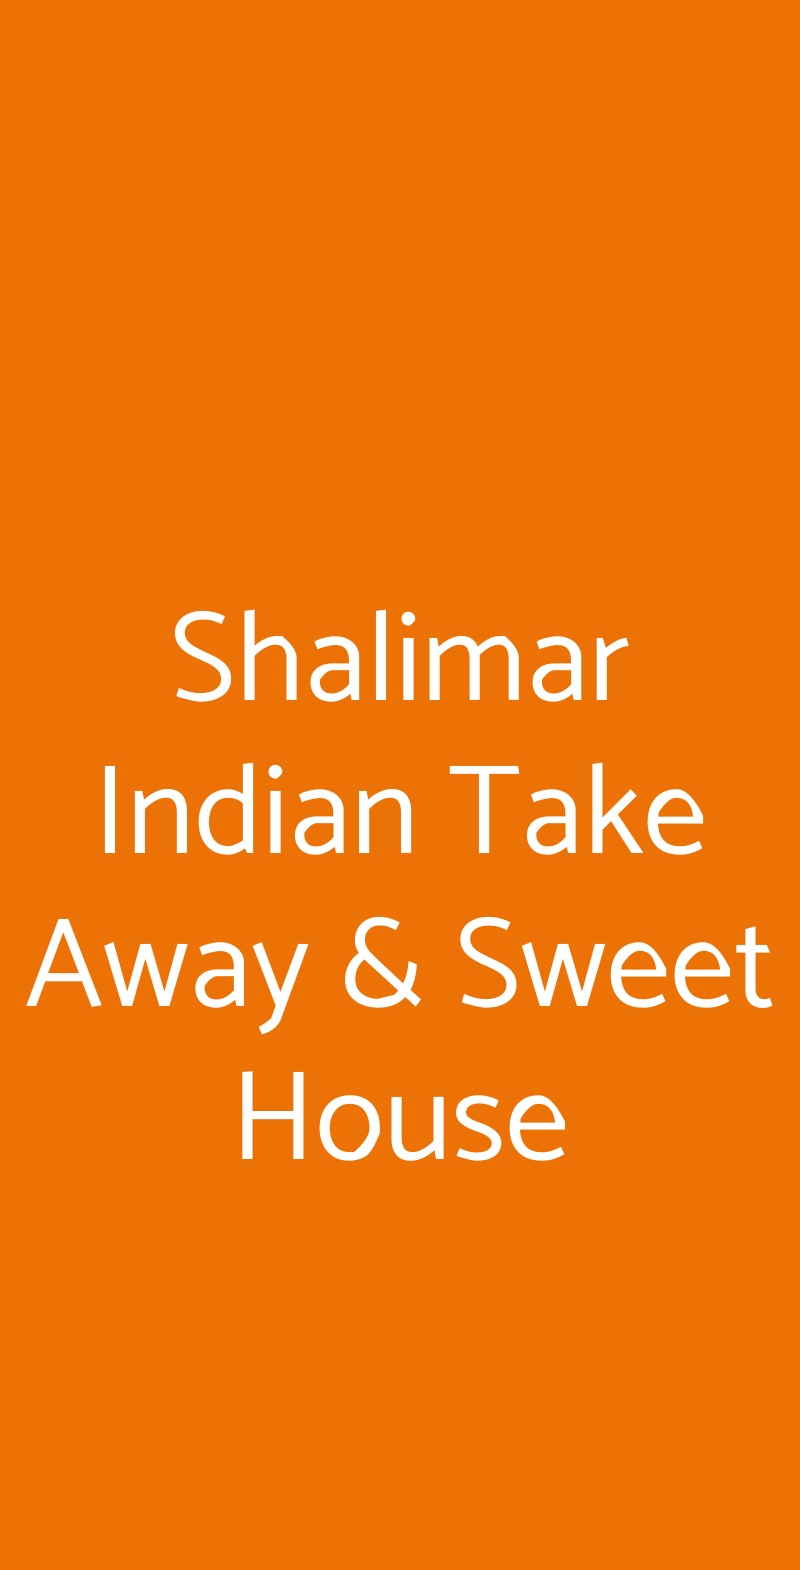 Shalimar Indian Take Away & Sweet House Milano menù 1 pagina